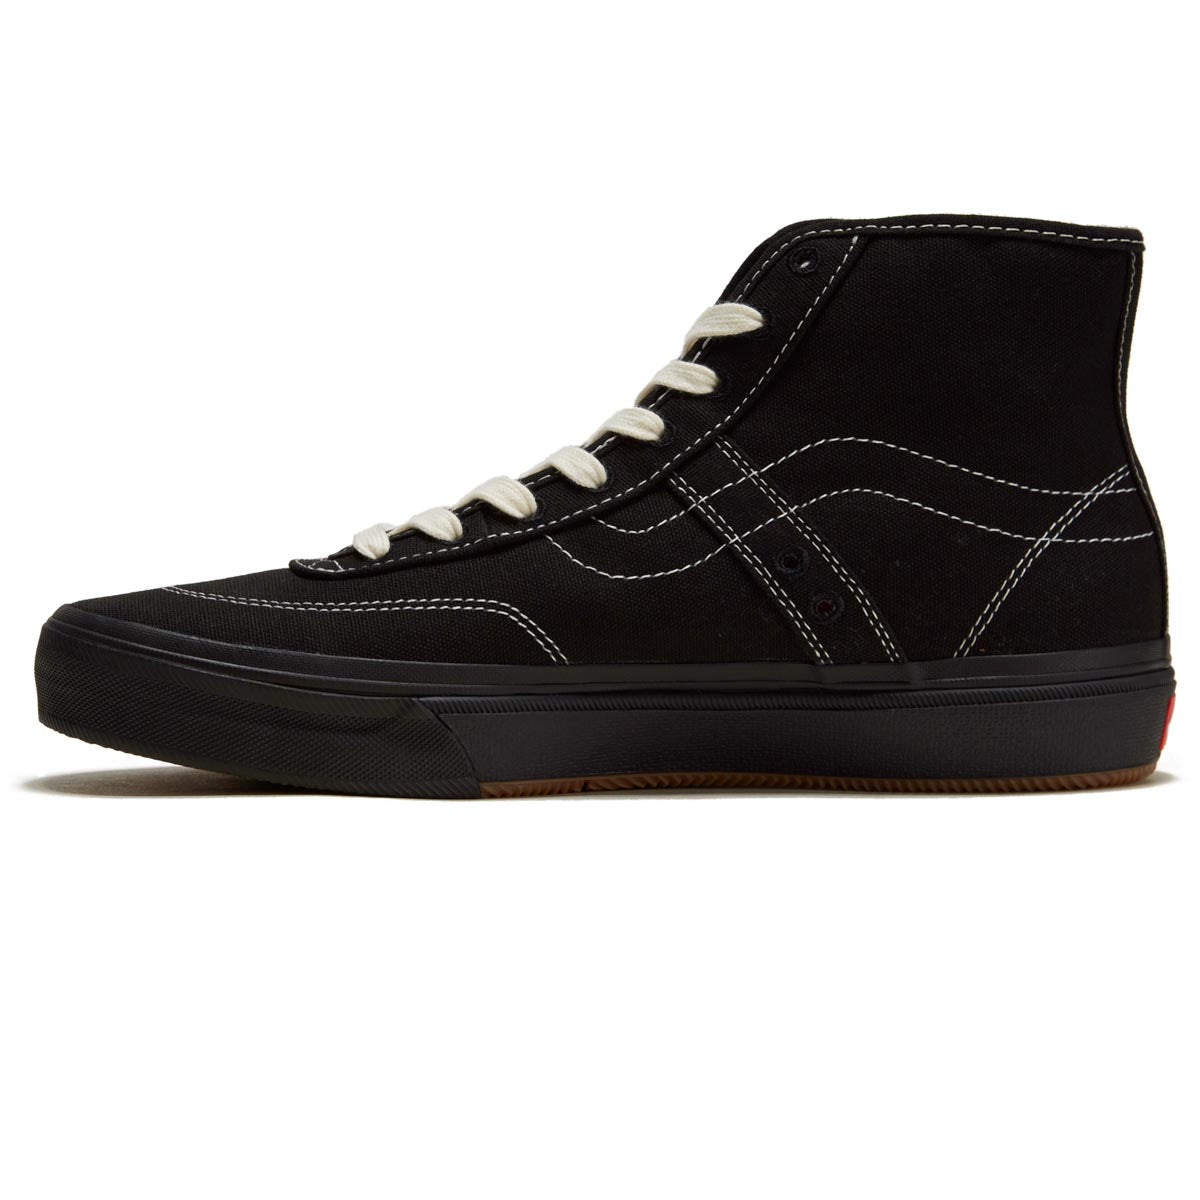 Vans Crockett High Decon Shoes - Canvas Black/Black/White image 2